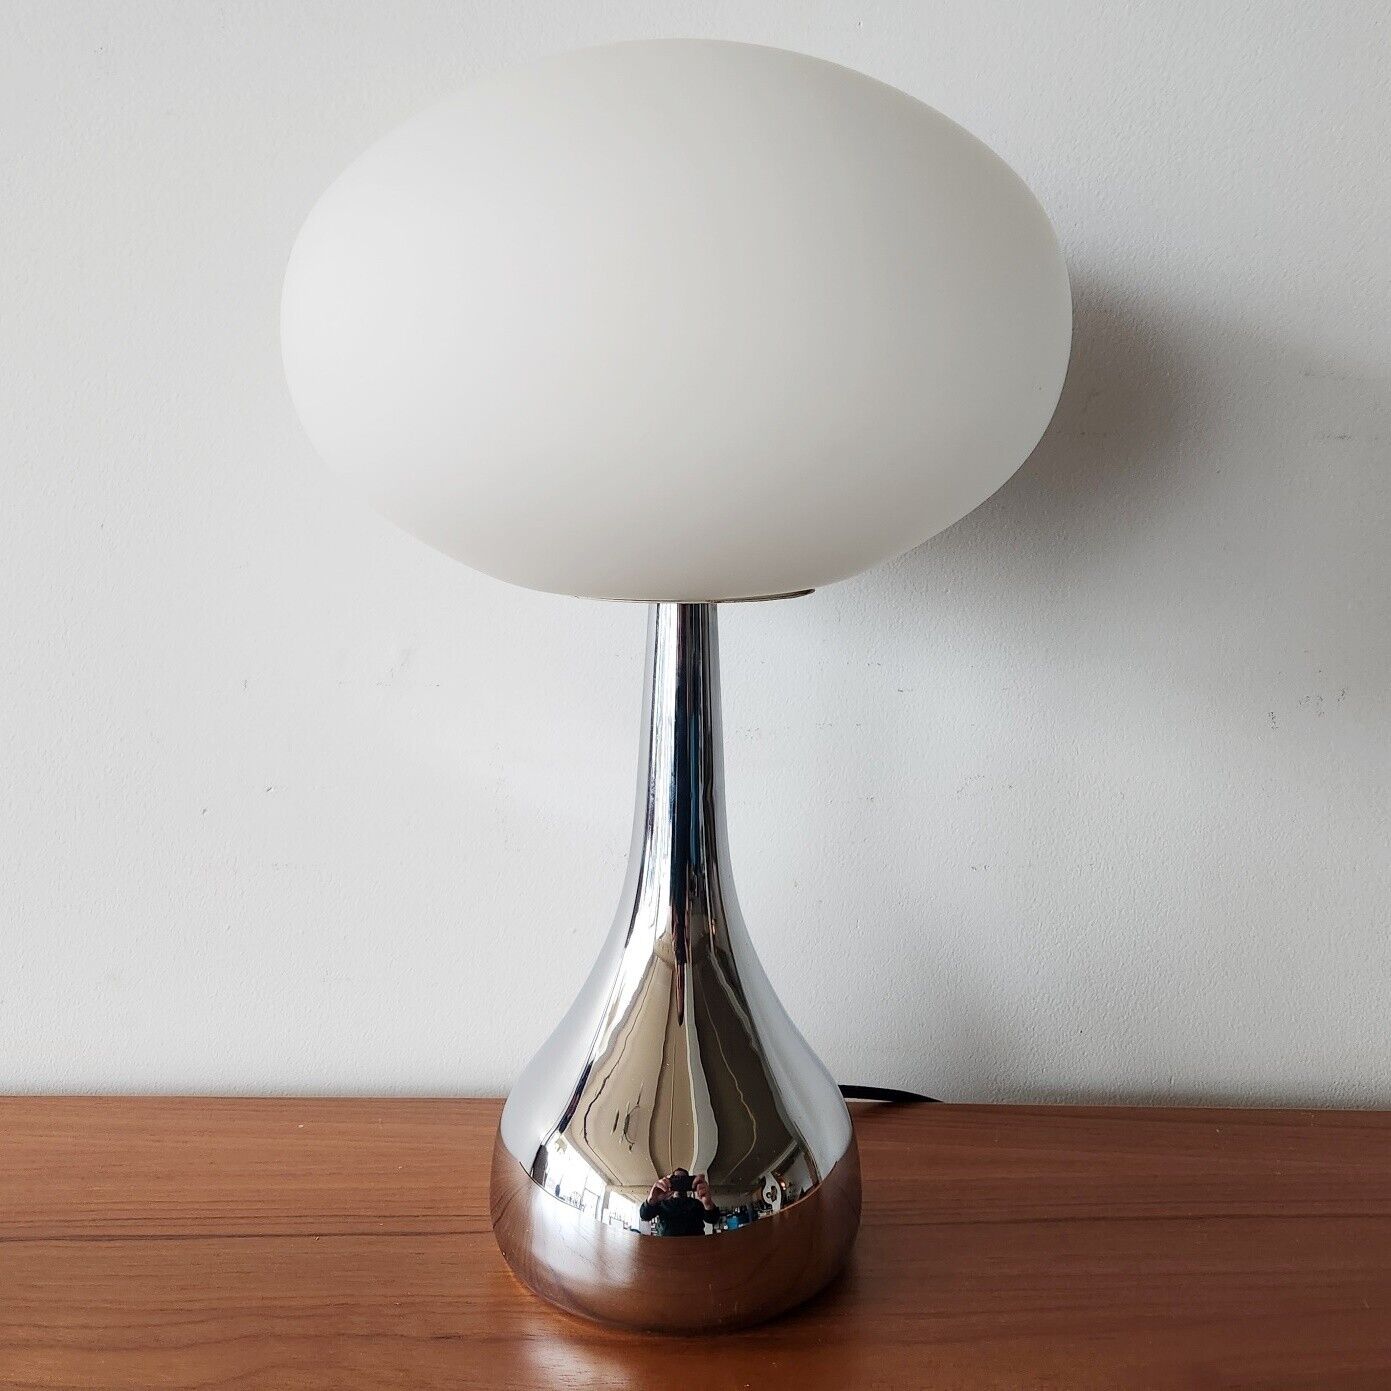 Vintage LAUREL Style MUSHROOM TABLE LAMP Space Age Mid Century Post Modern